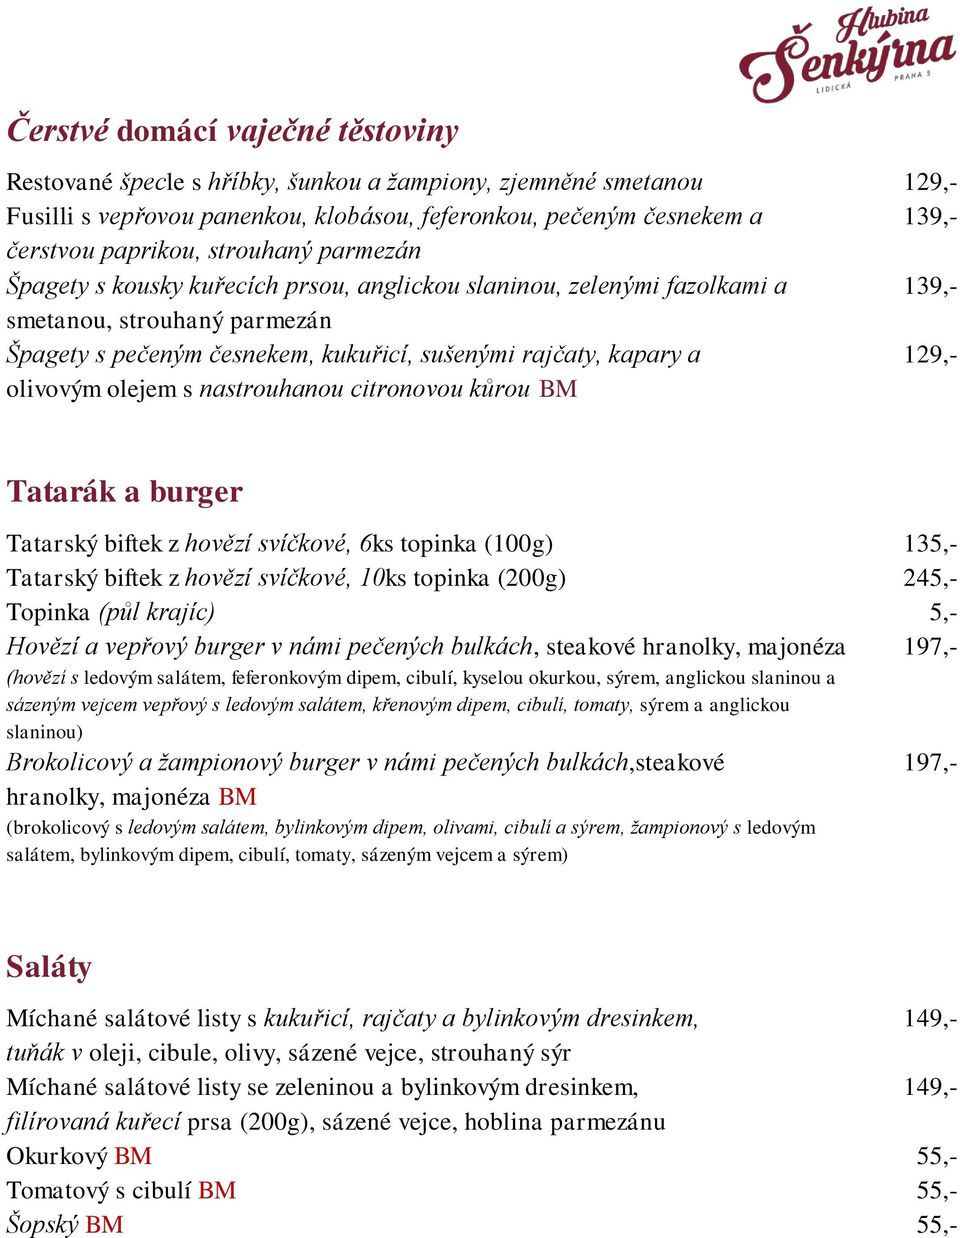 nastrouhanou citronovou kůrou BM 129,- 139,- 139,- 129,- Tatarák a burger Tatarský biftek z hovězí svíčkové, 6ks topinka (100g) Tatarský biftek z hovězí svíčkové, 10ks topinka (200g) Topinka (půl